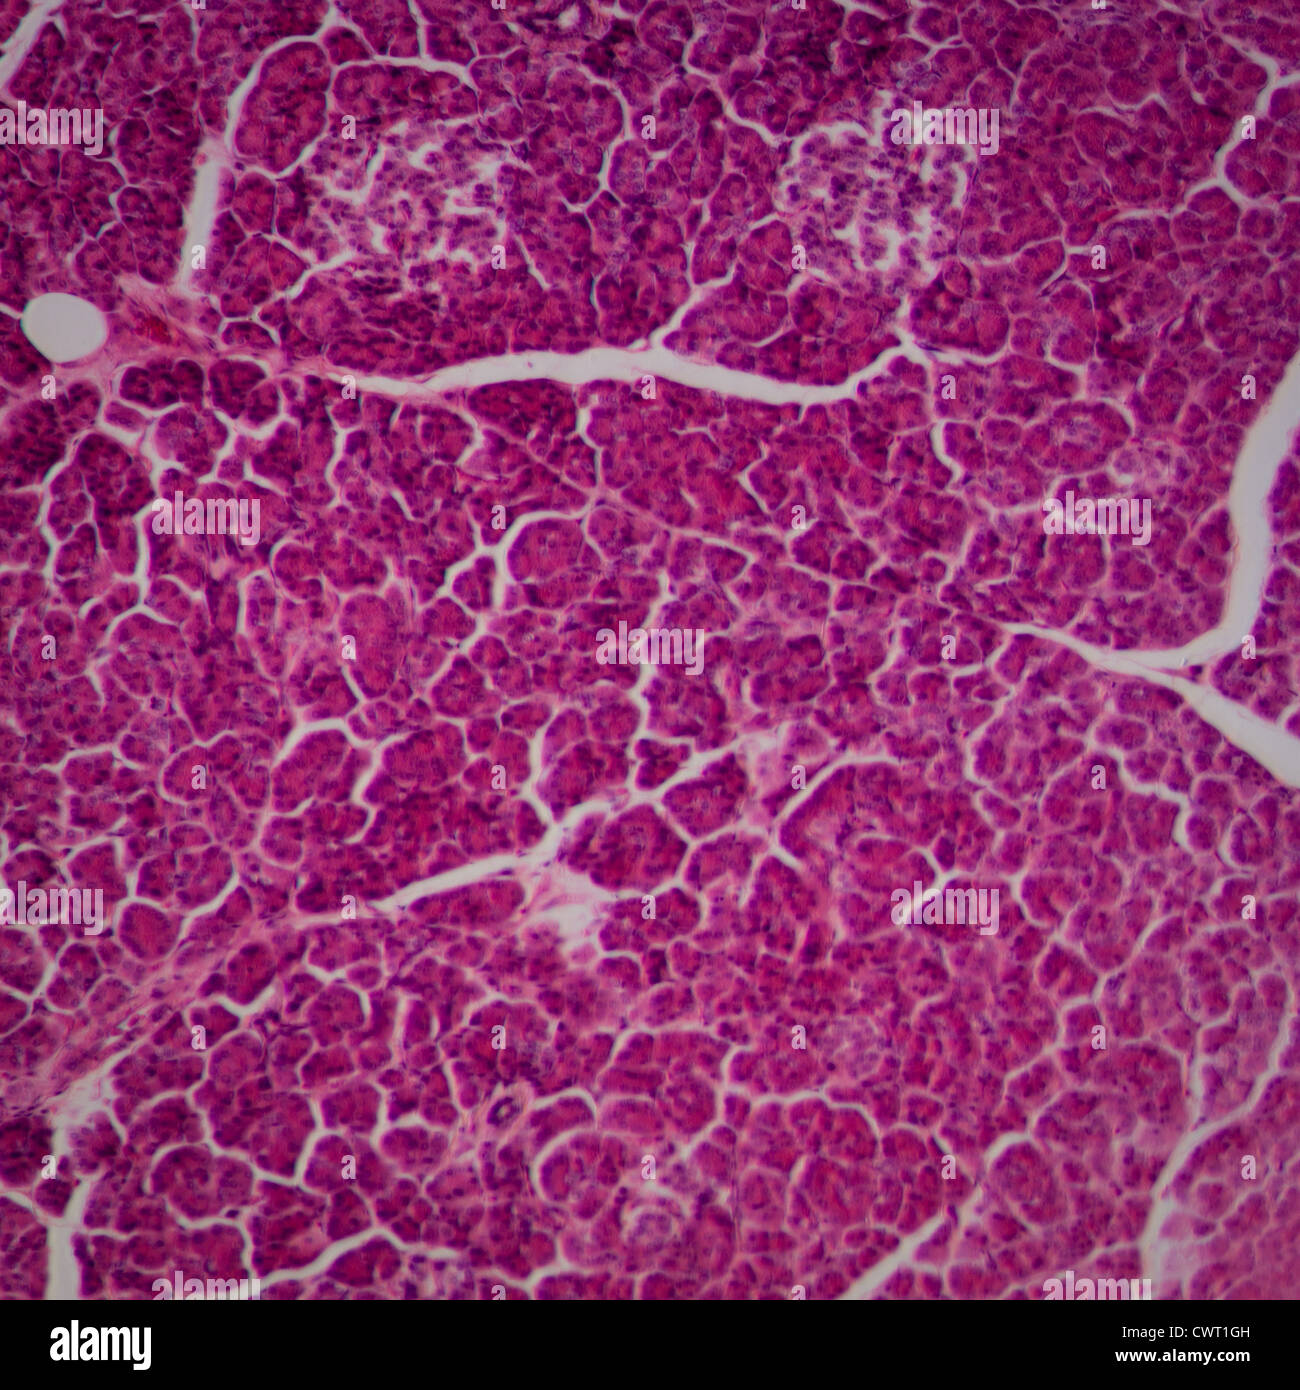 mikroskopische Wissenschaftsabschnitt des Lebergewebes Stockfoto